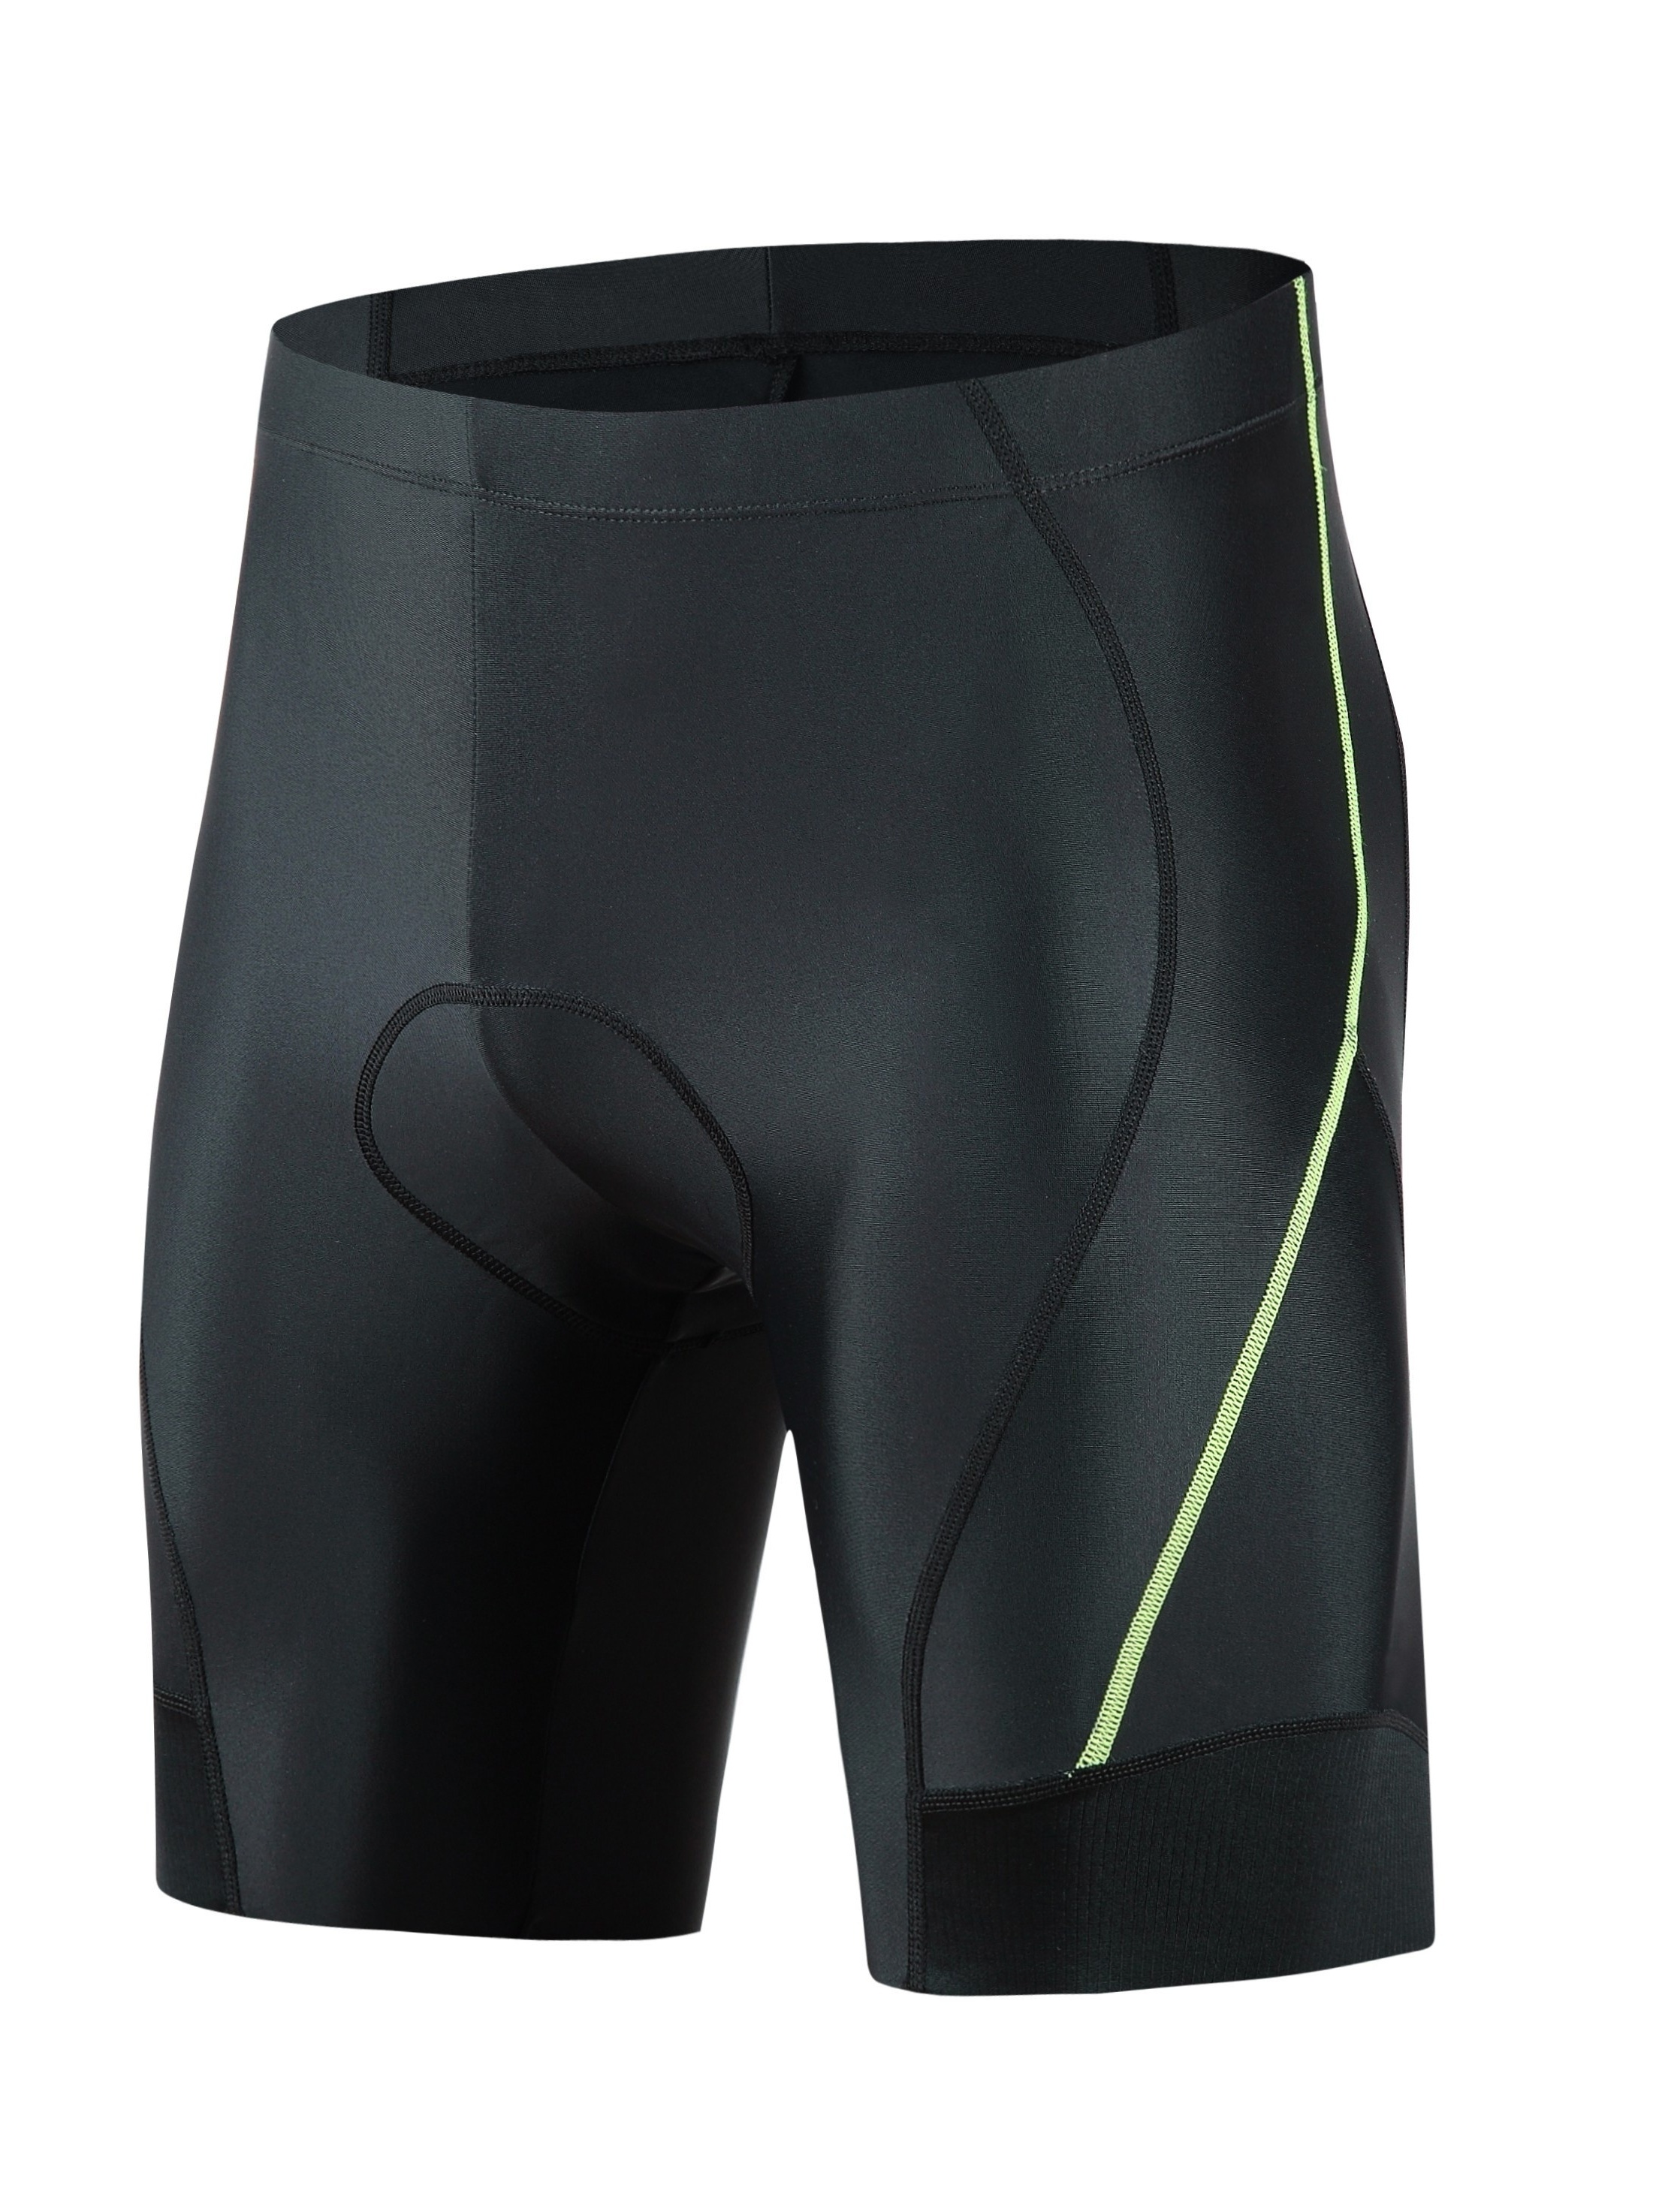 Pantalones Cortos Acolchados Para Ciclismo Para Hombres, Ropa Interior  Suave, Cómoda Y Transpirable De Cintura Alta Para Ciclismo, Carrera Y  Deportes